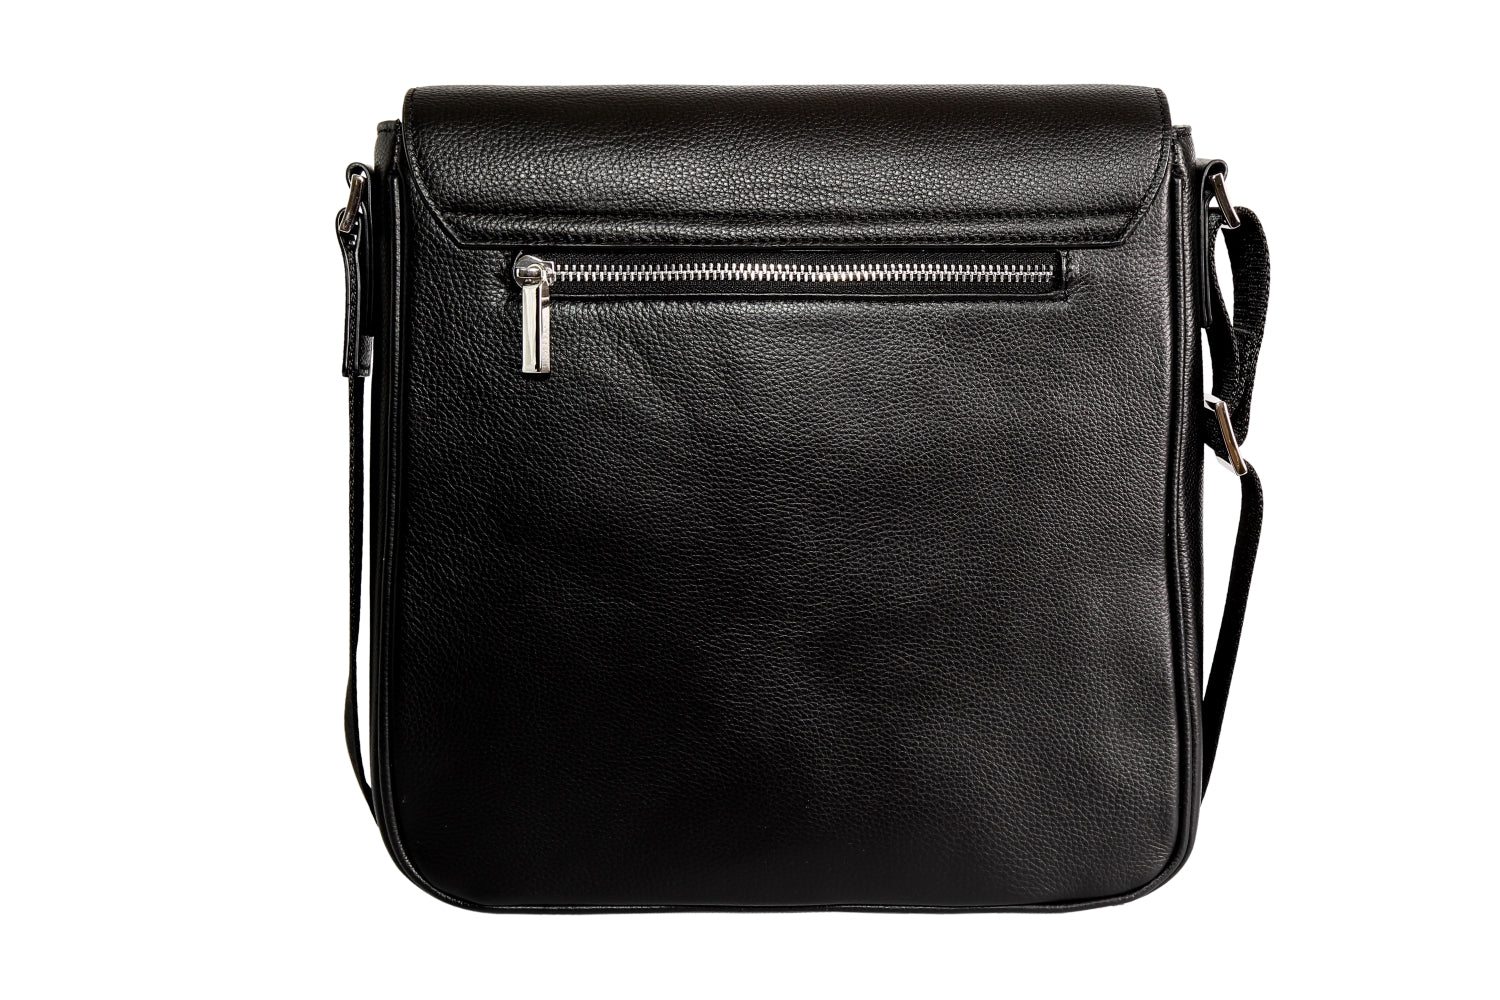 Vky Mateo Pride Leather Messenger Shoulder Bag Handbag Black Rainbow